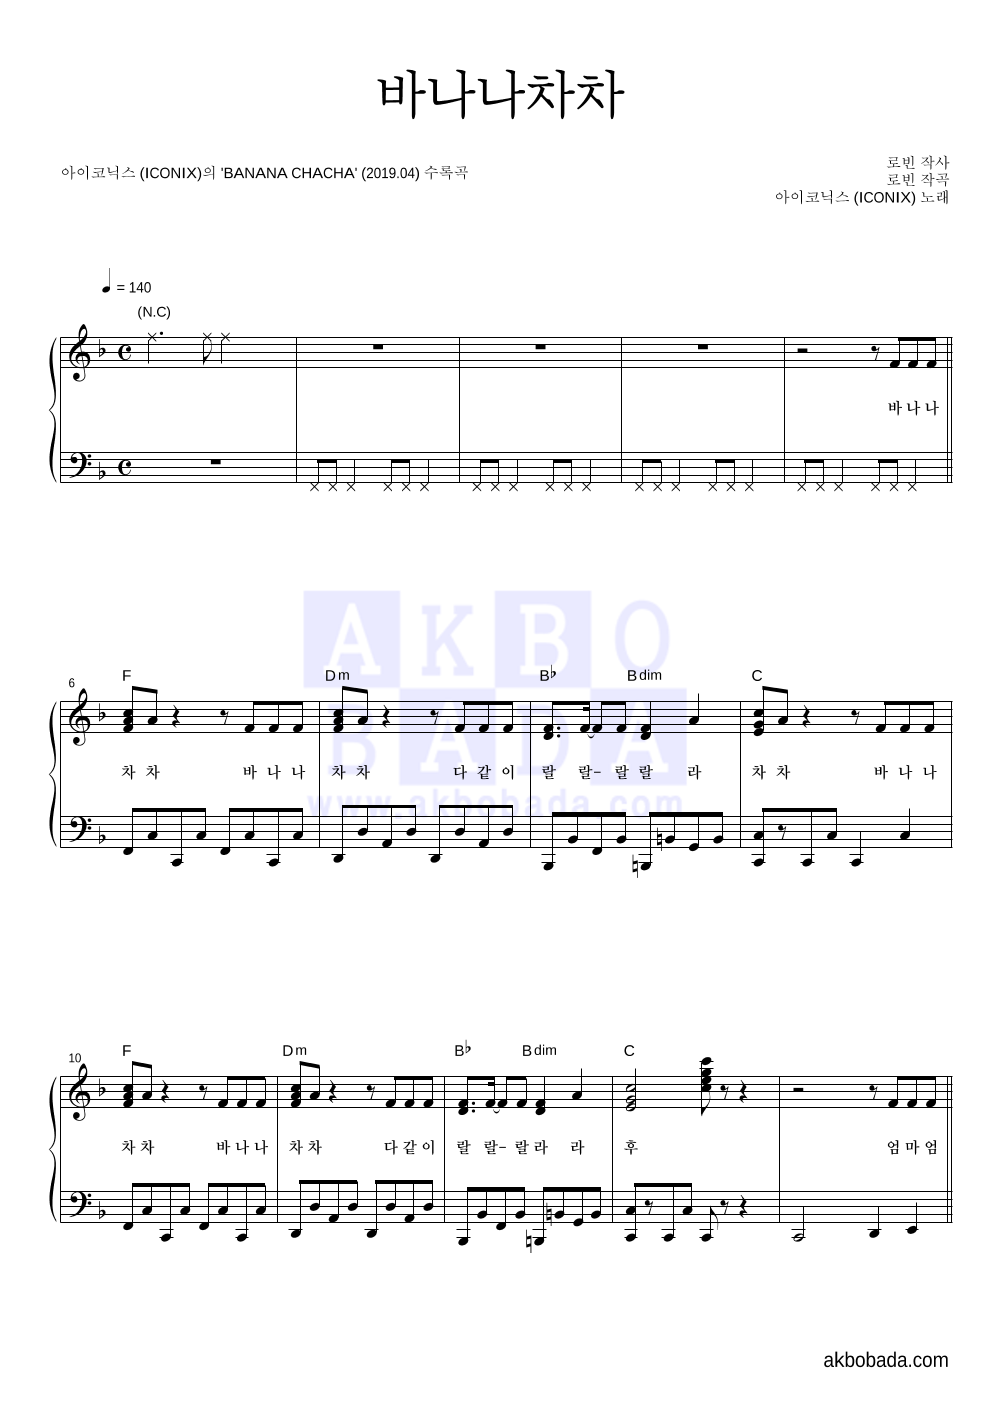 아이코닉스 (ICONIX) - 바나나차차 피아노 2단 악보 